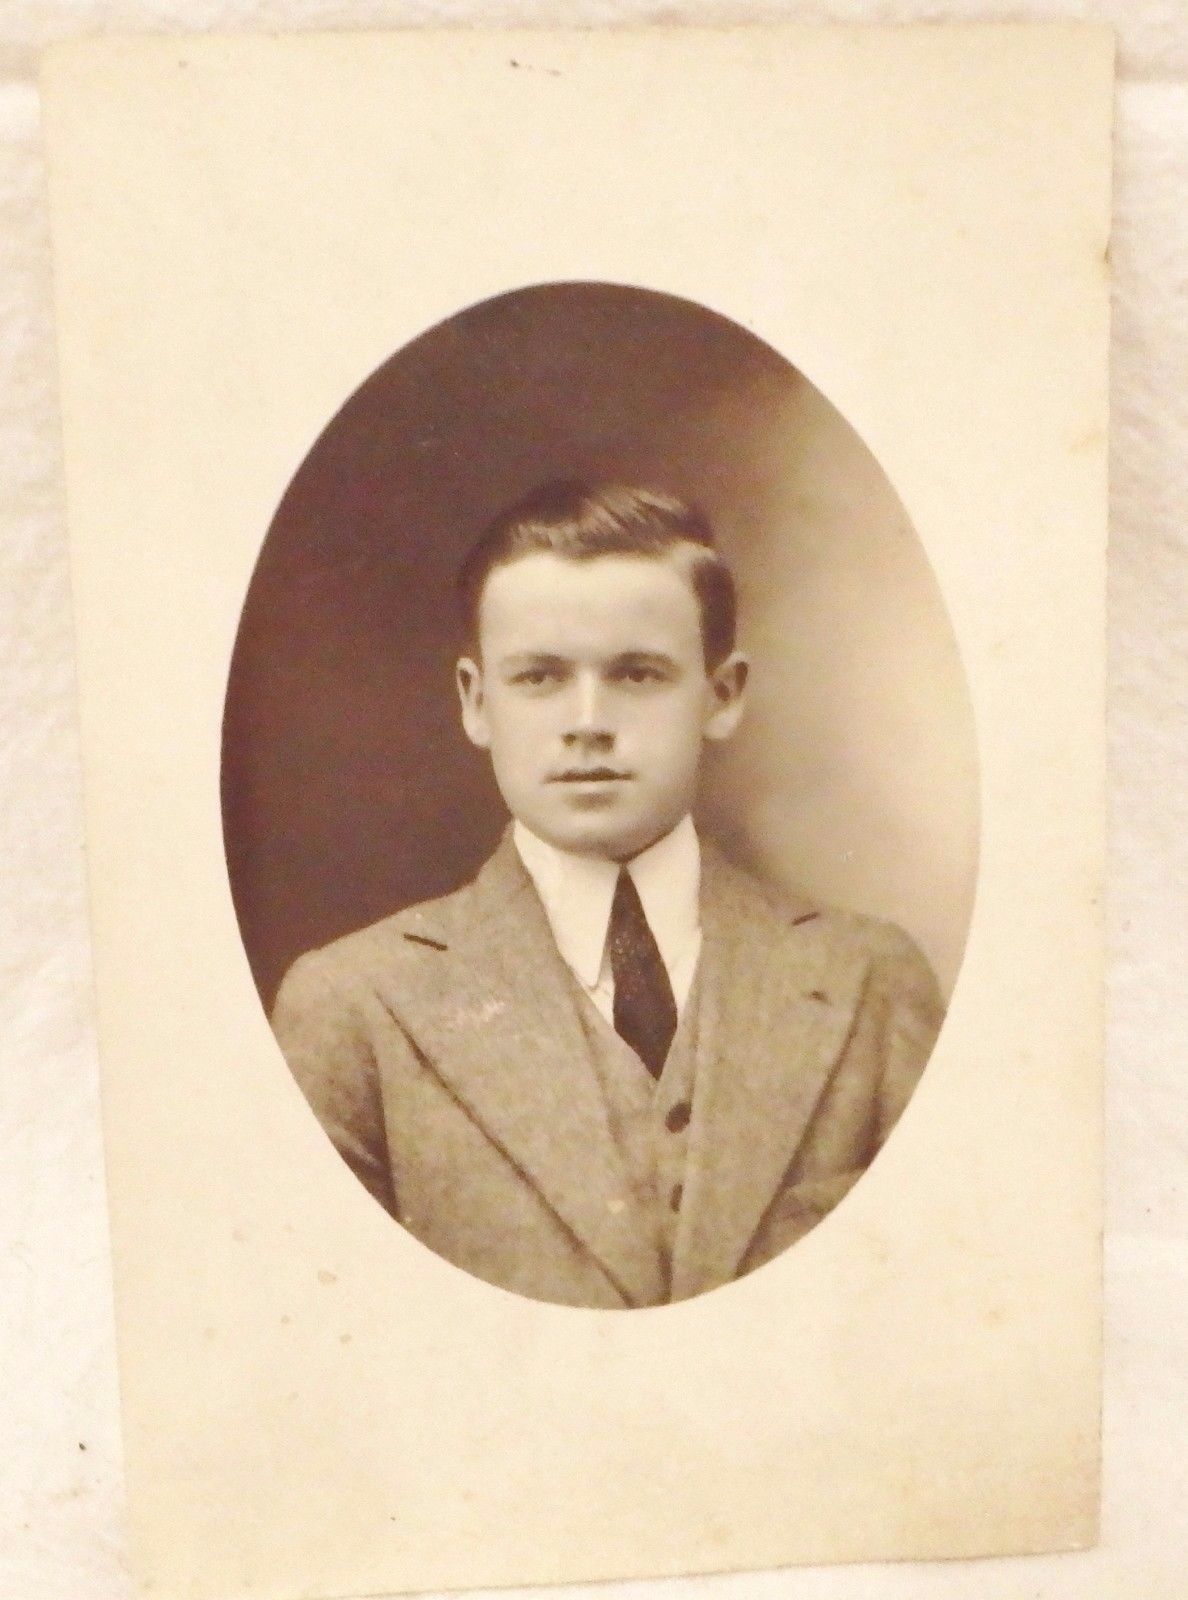 Photograph Post Card RPPC NY NY James Healy Sr. Oval early 1900\'s